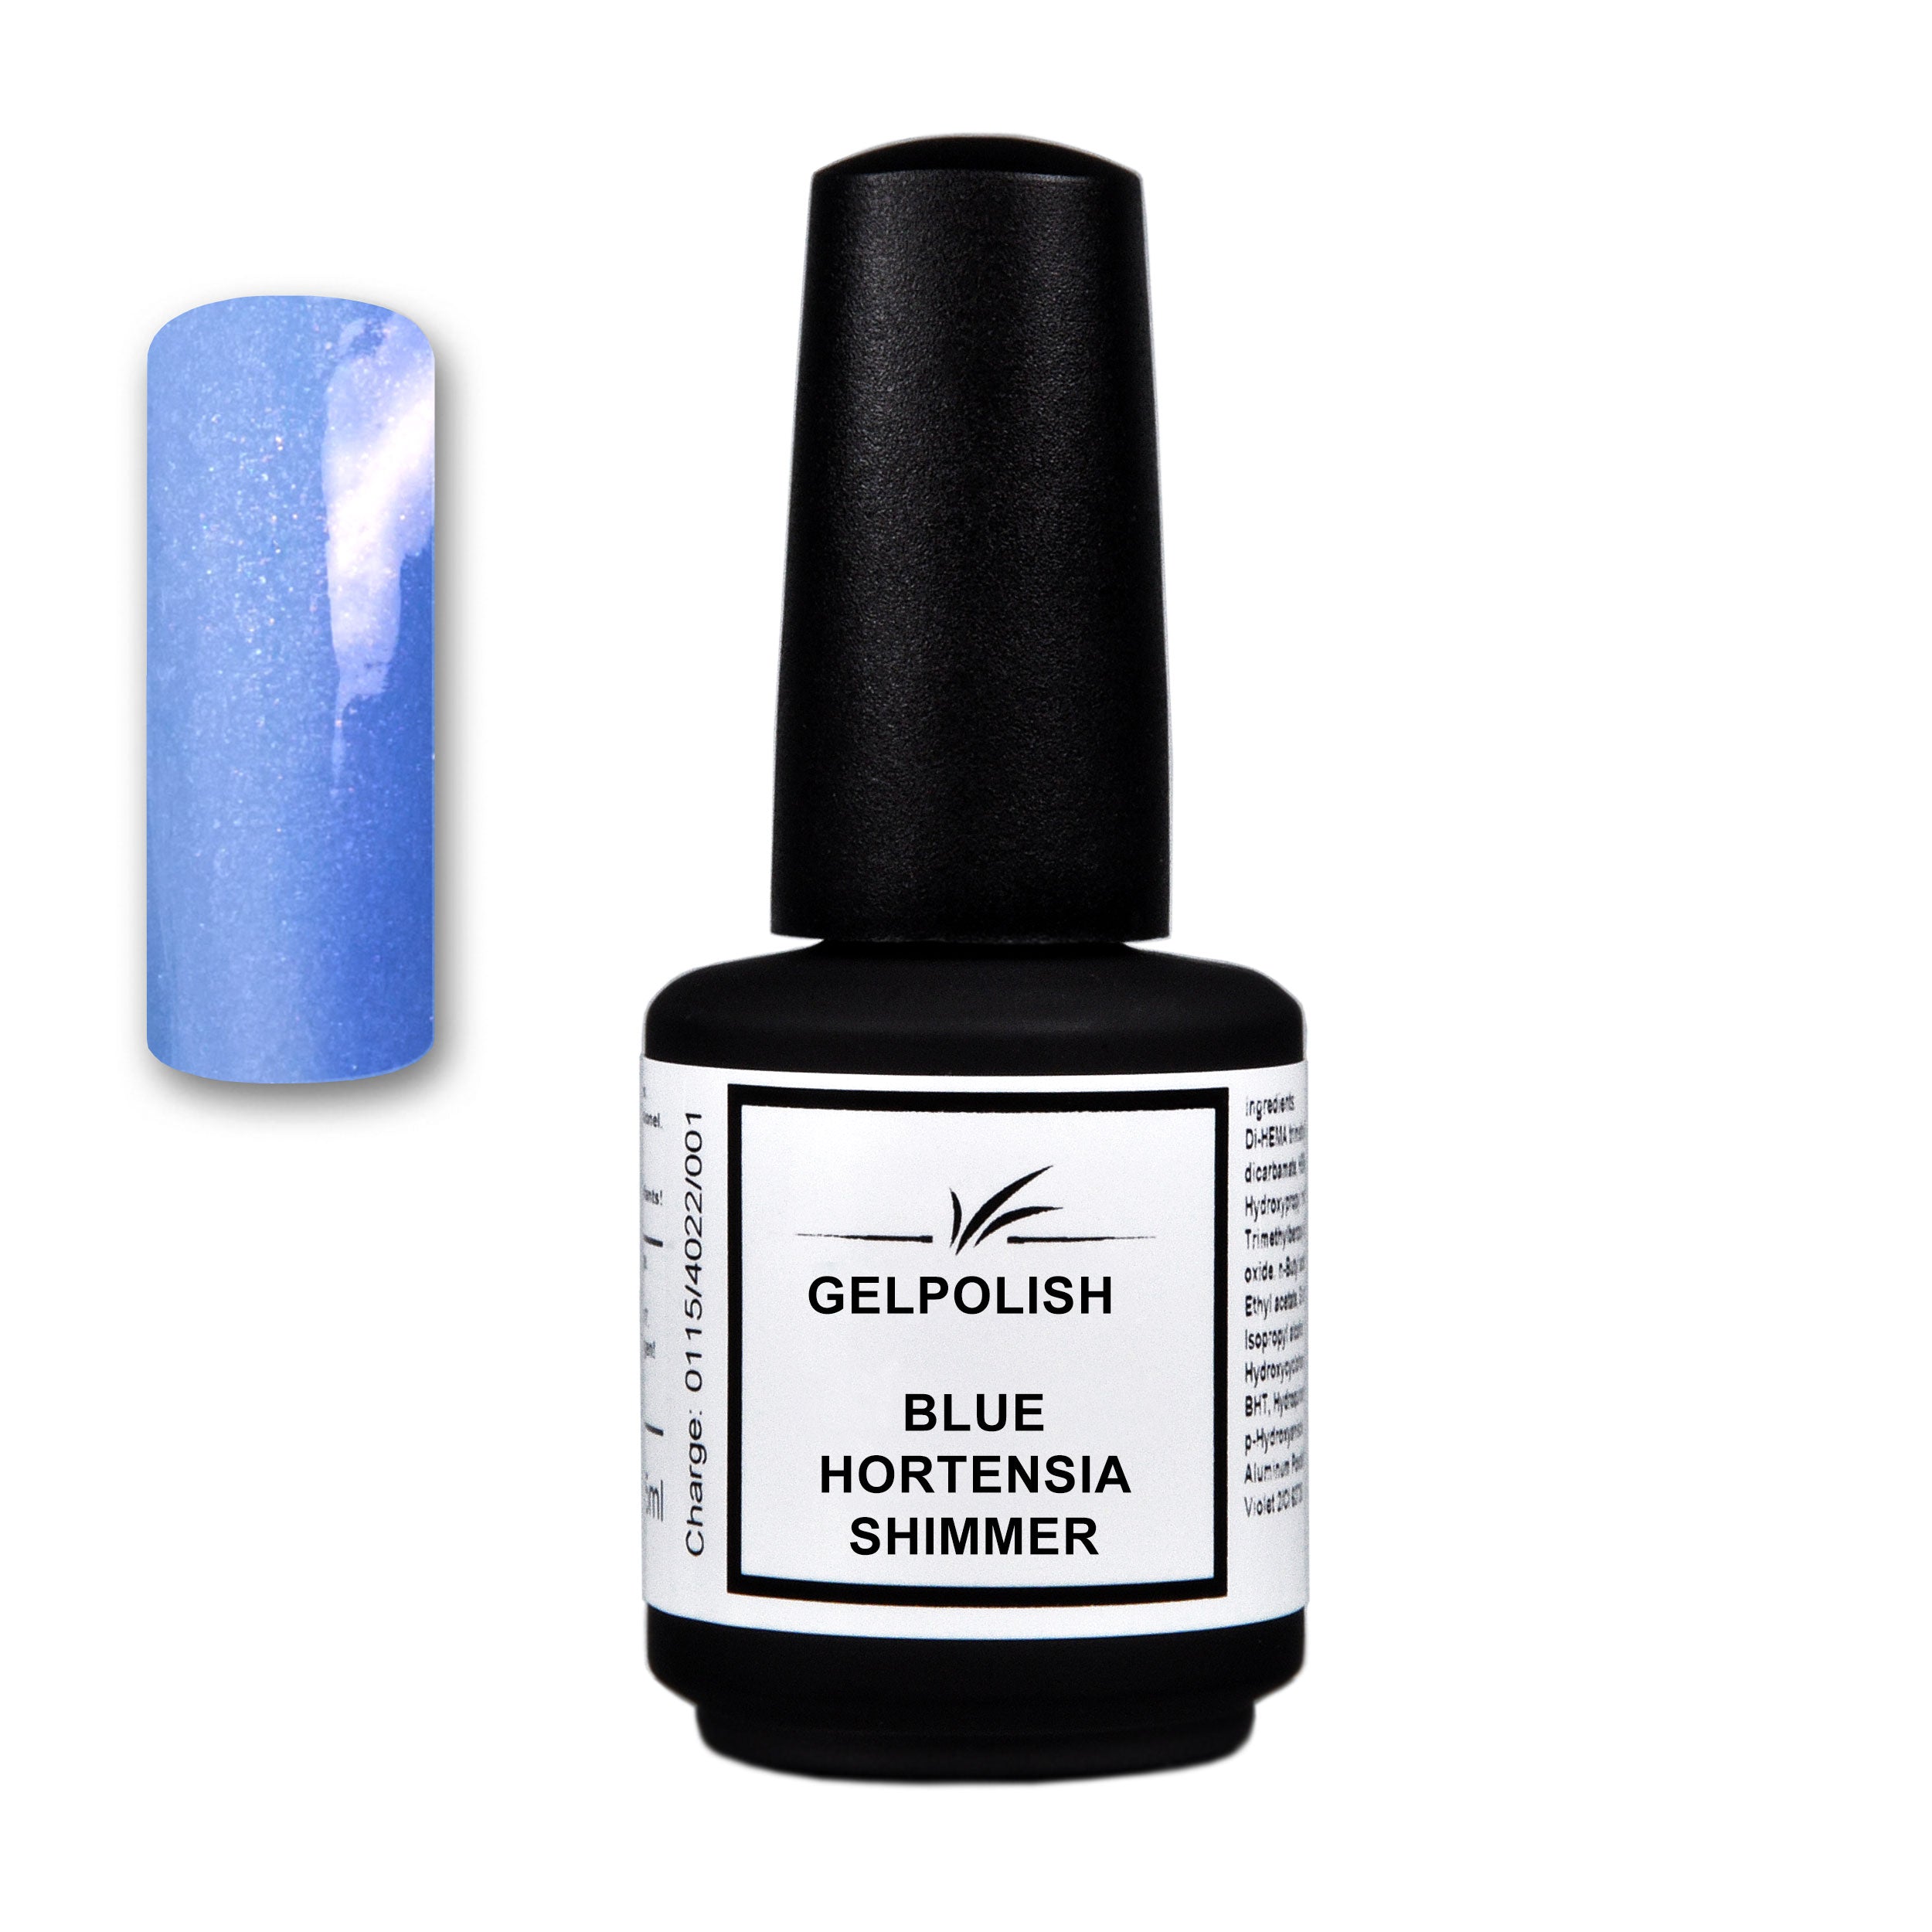 Gelpolish VSP Blue Hortensia Shimmer